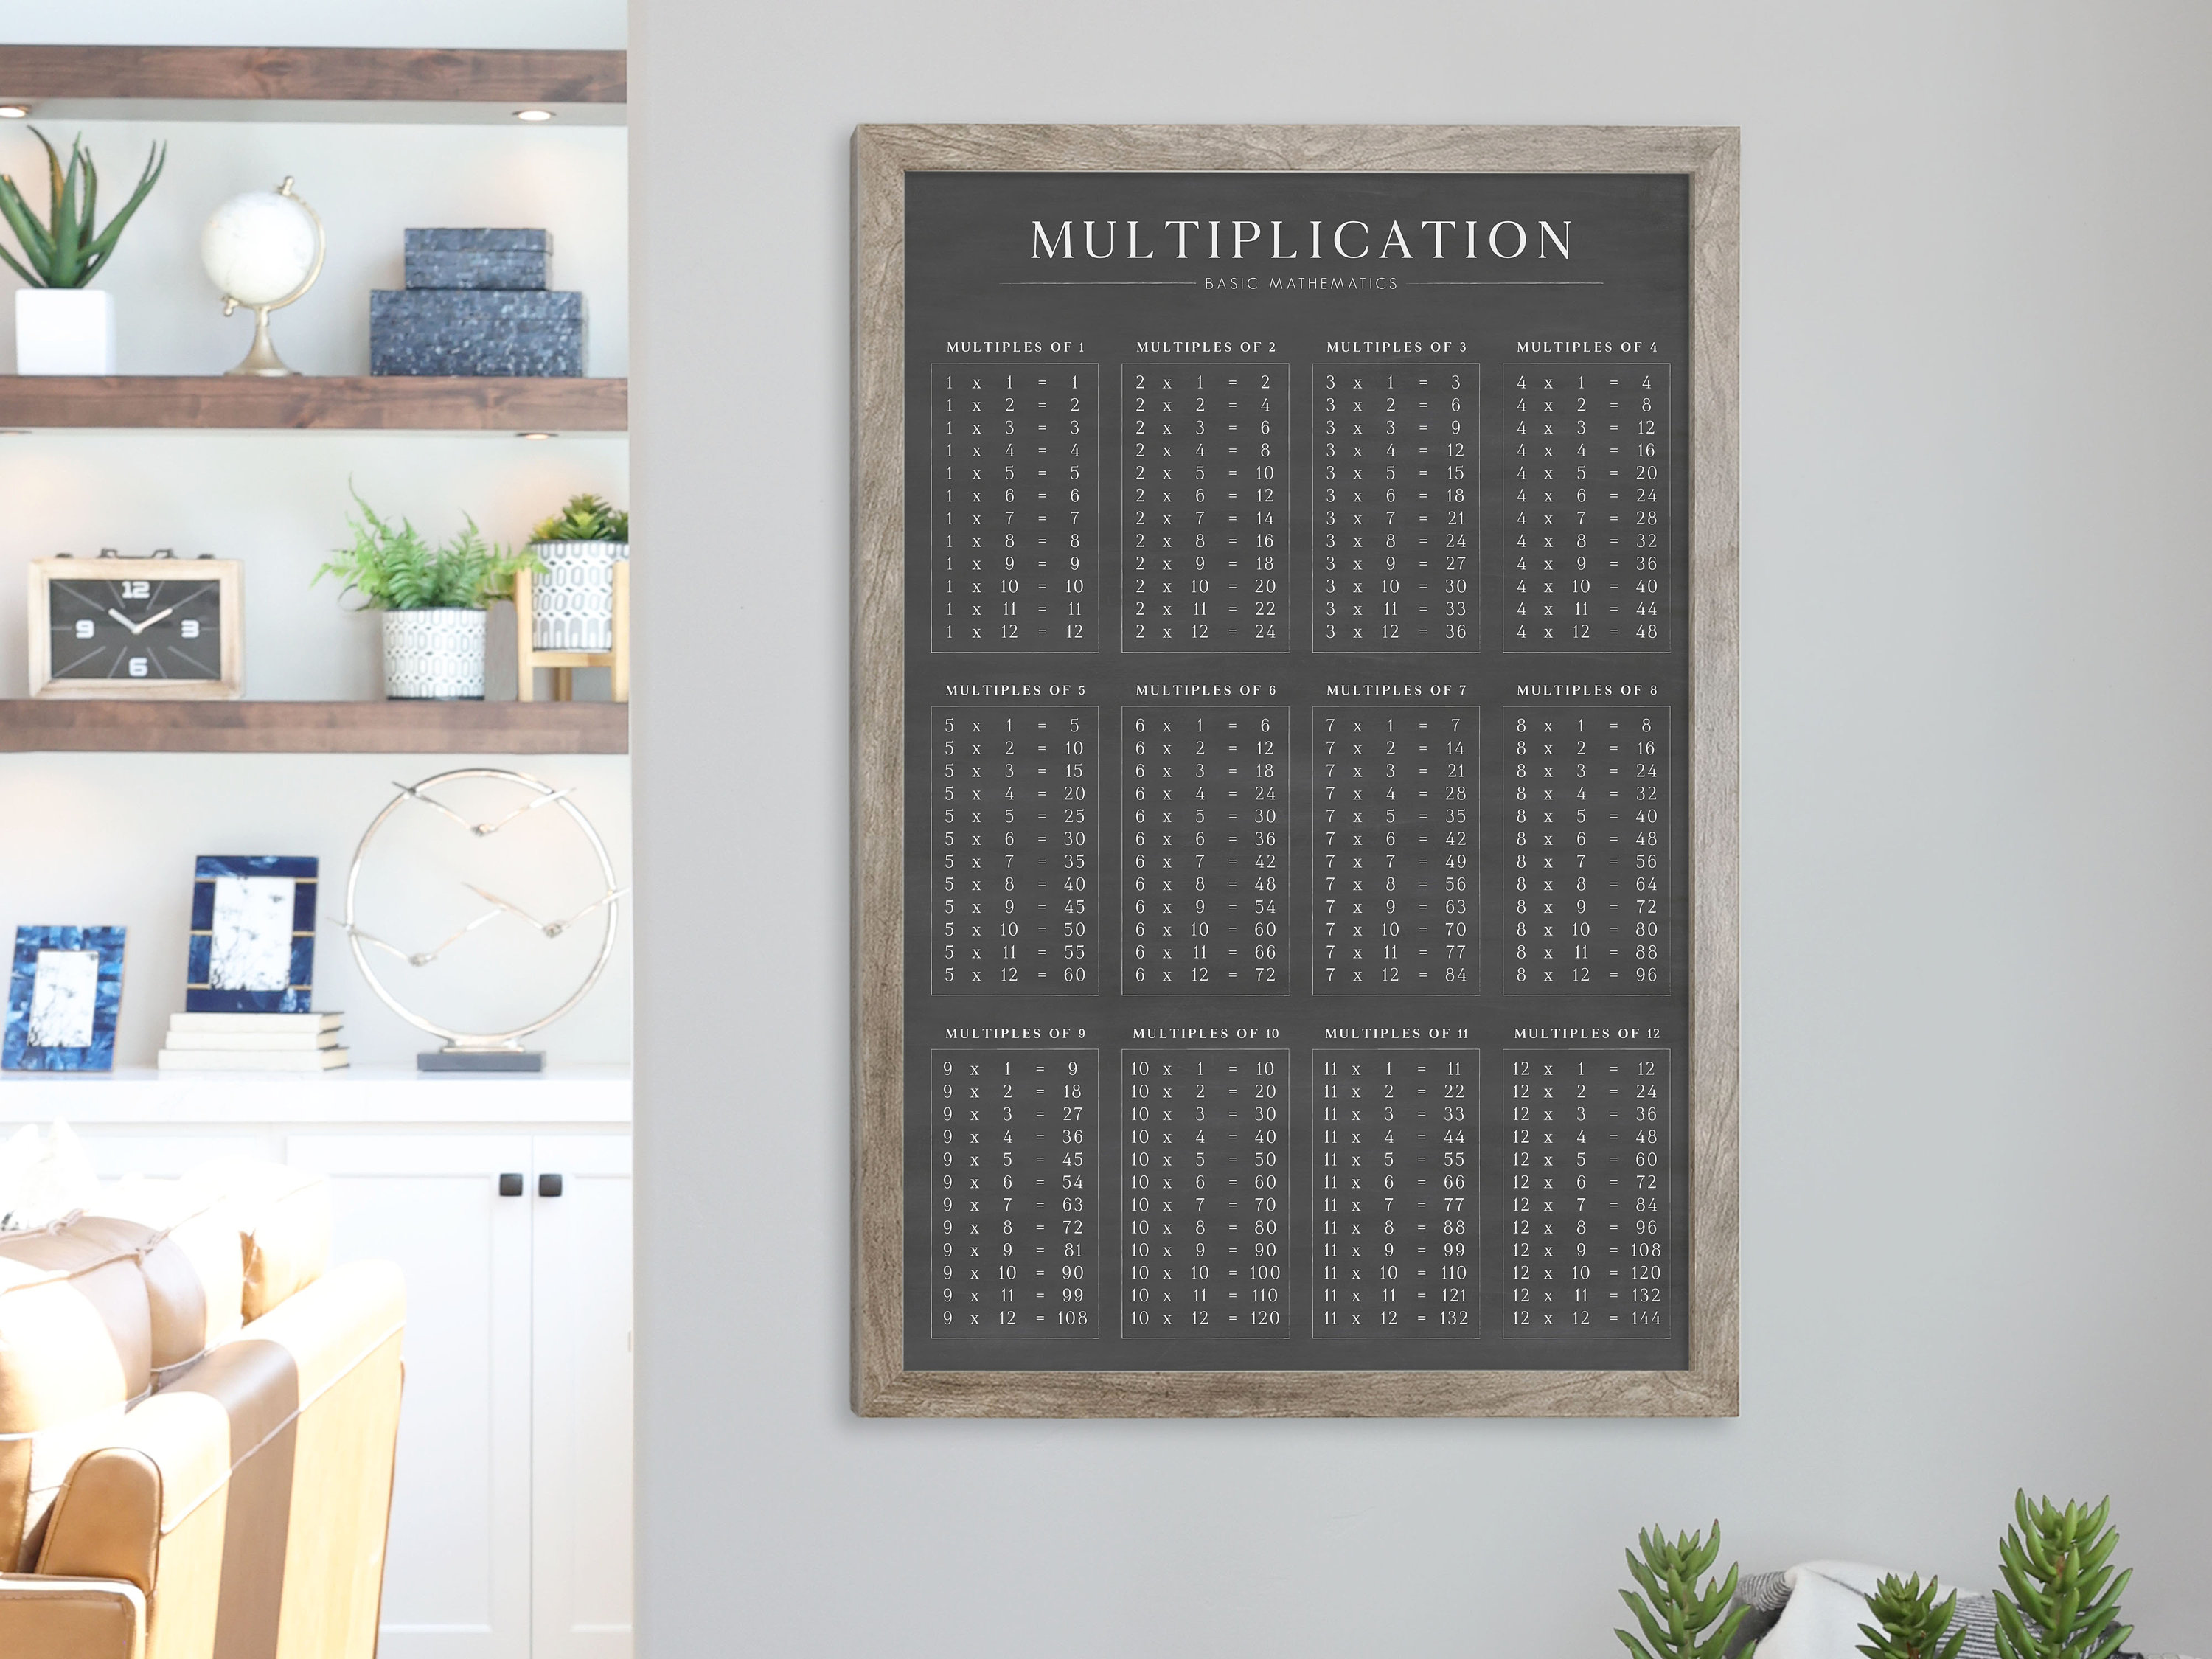 Mathemagics - L'appli pour réviser les tables de multiplication